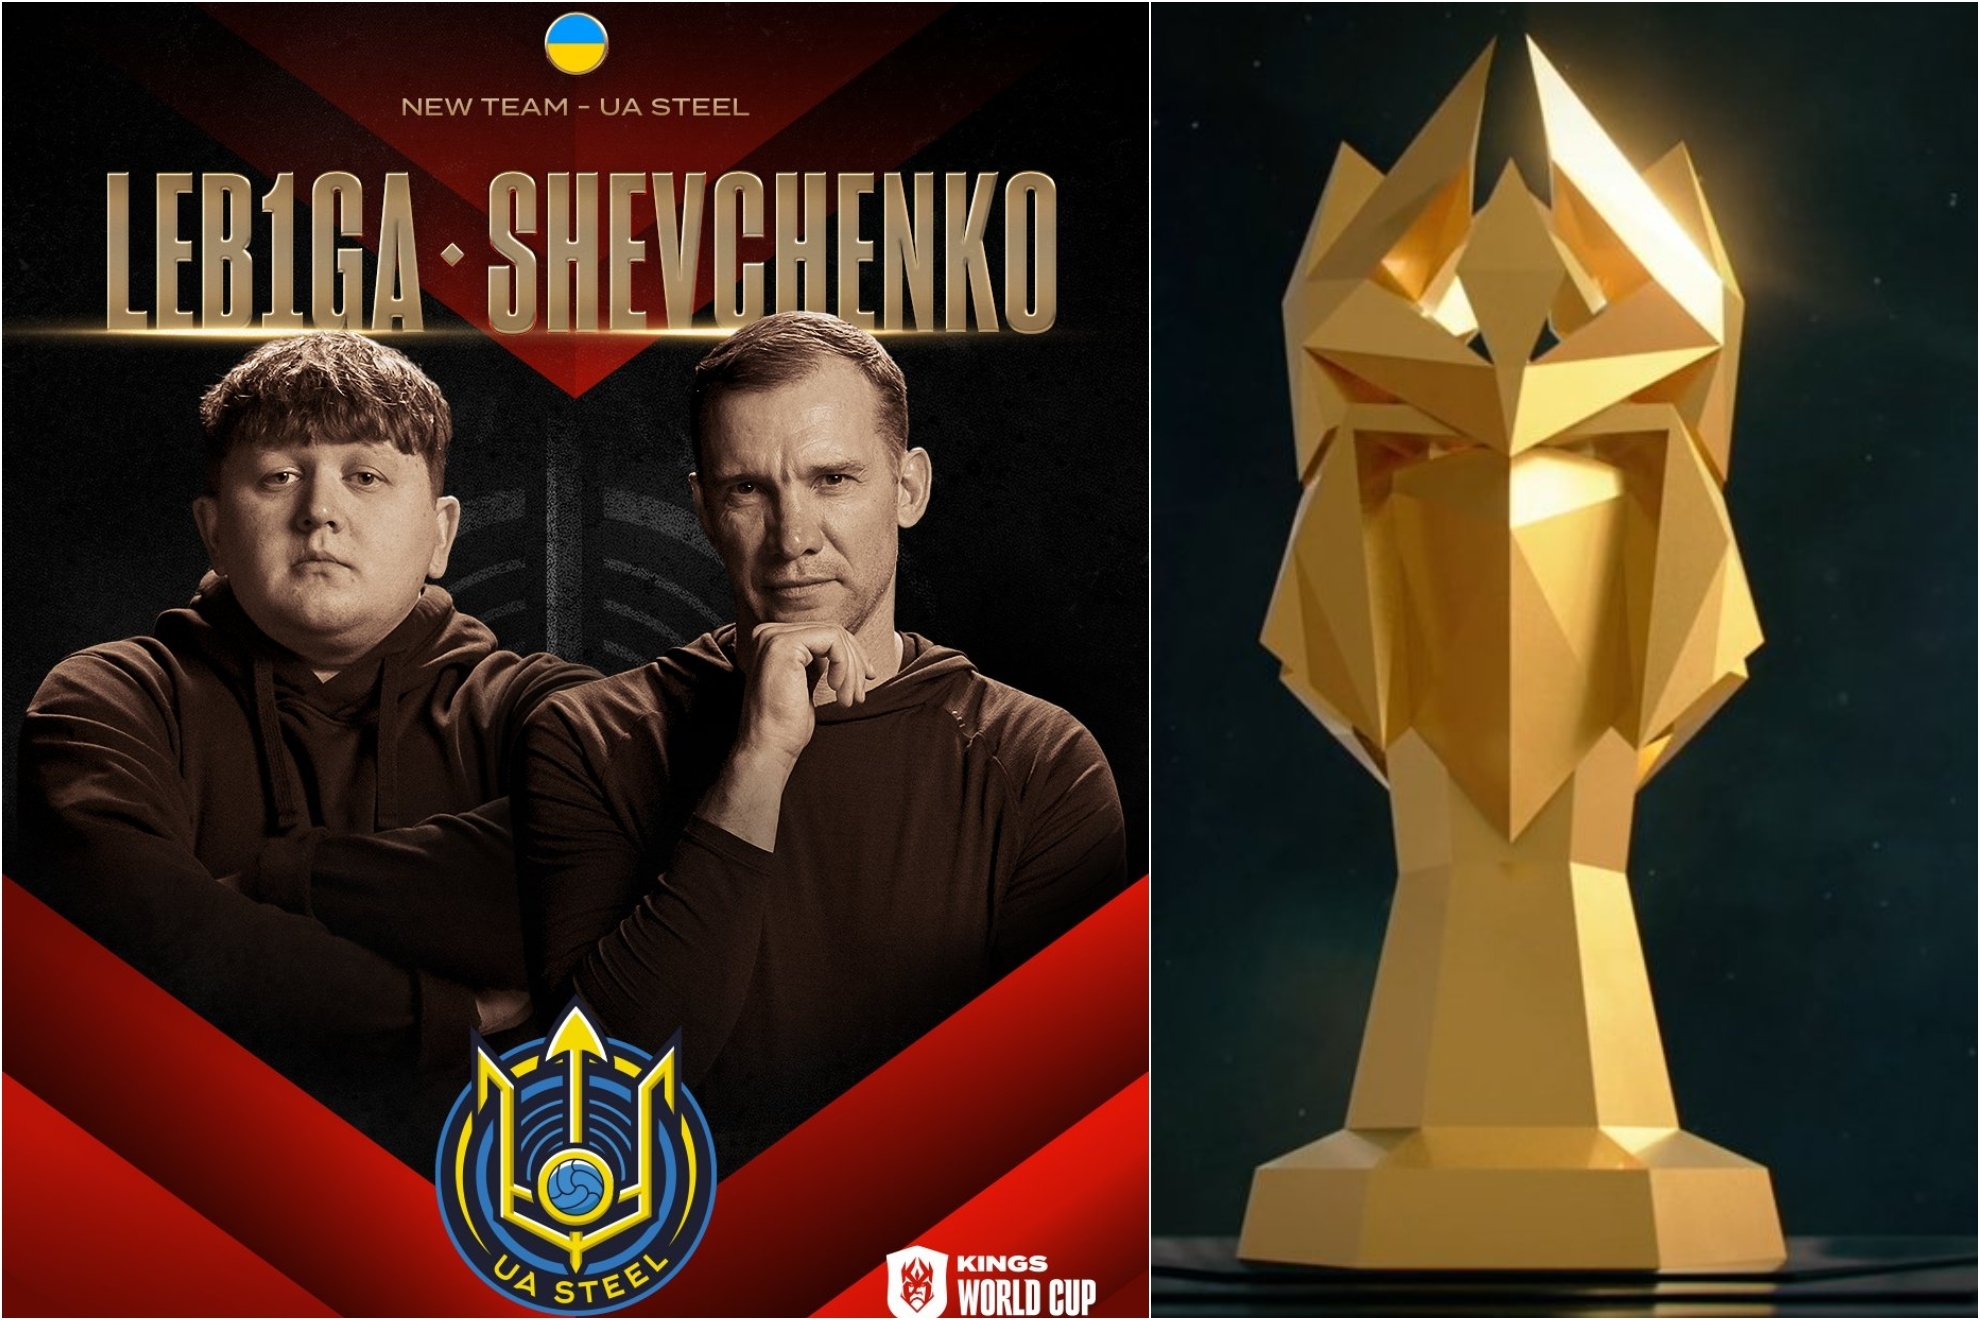 Andriy Shevchenko estar� en el Mundial de la Kings League con UA Steel, equipo representante de Ucrania